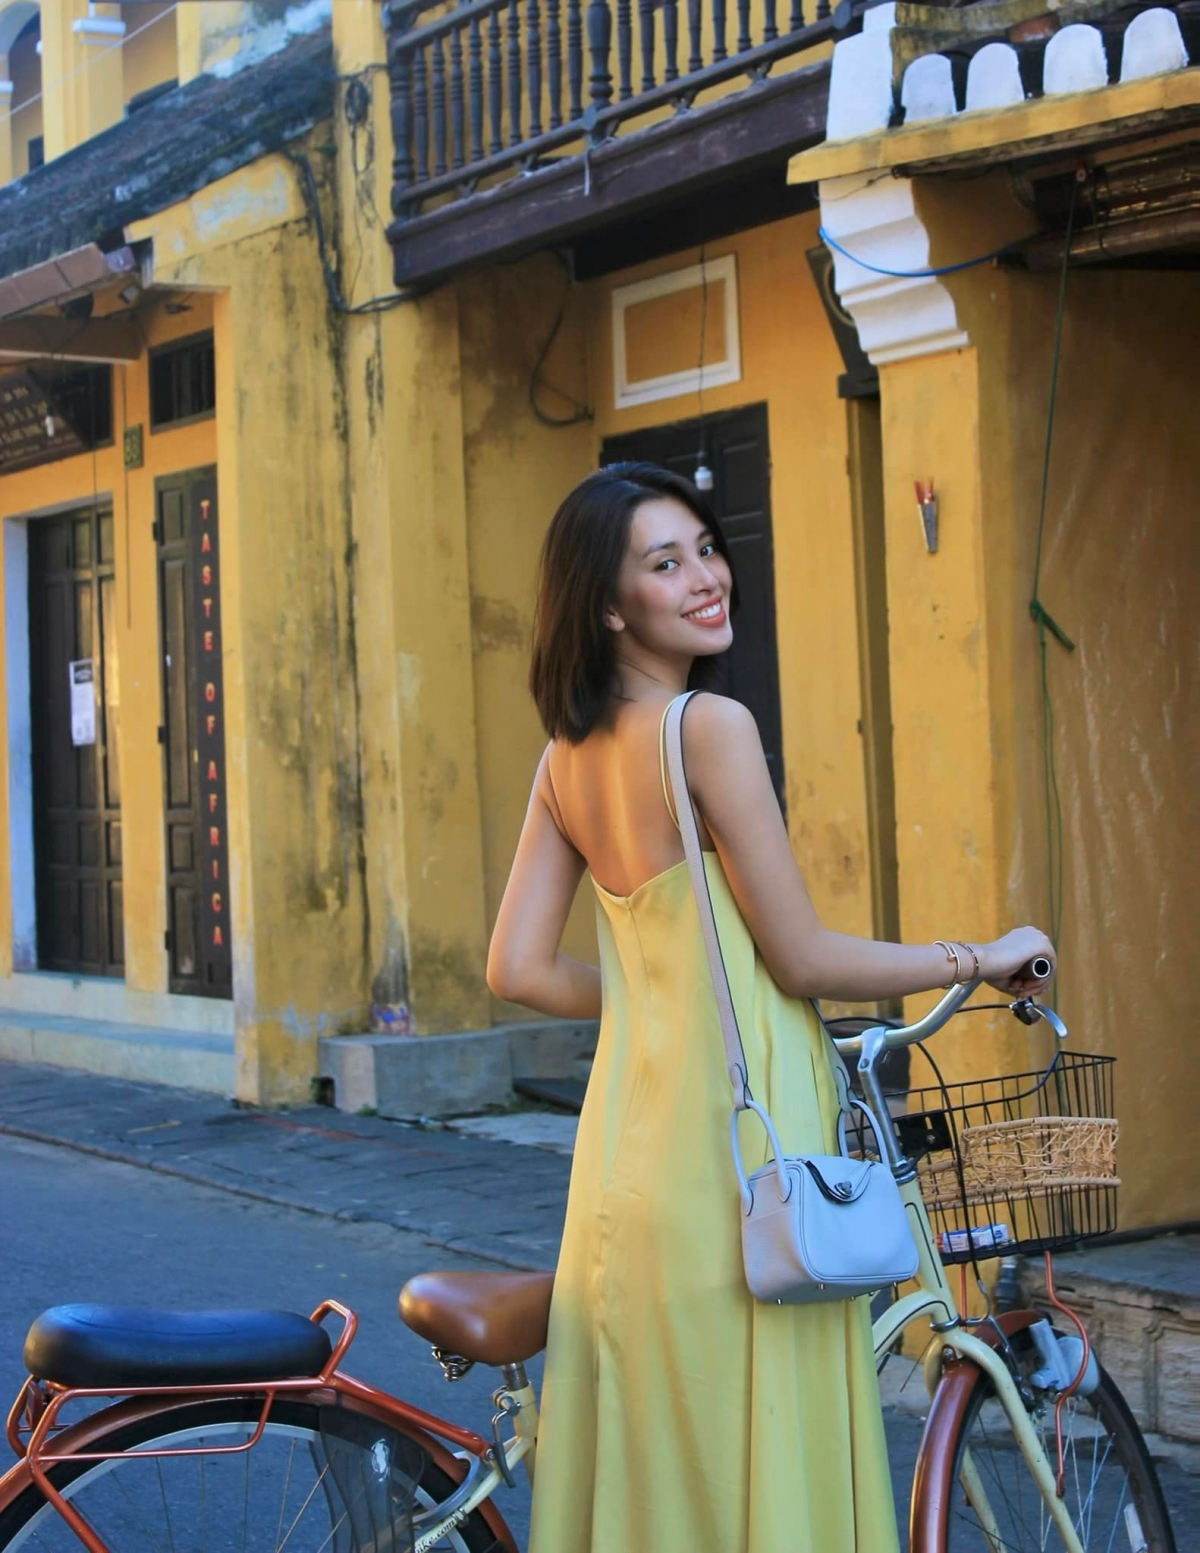 Hoa hậu Tiểu Vy khoe sắc xinh đẹp dưới nắng ở quê nhà Hội An - Ảnh 1.